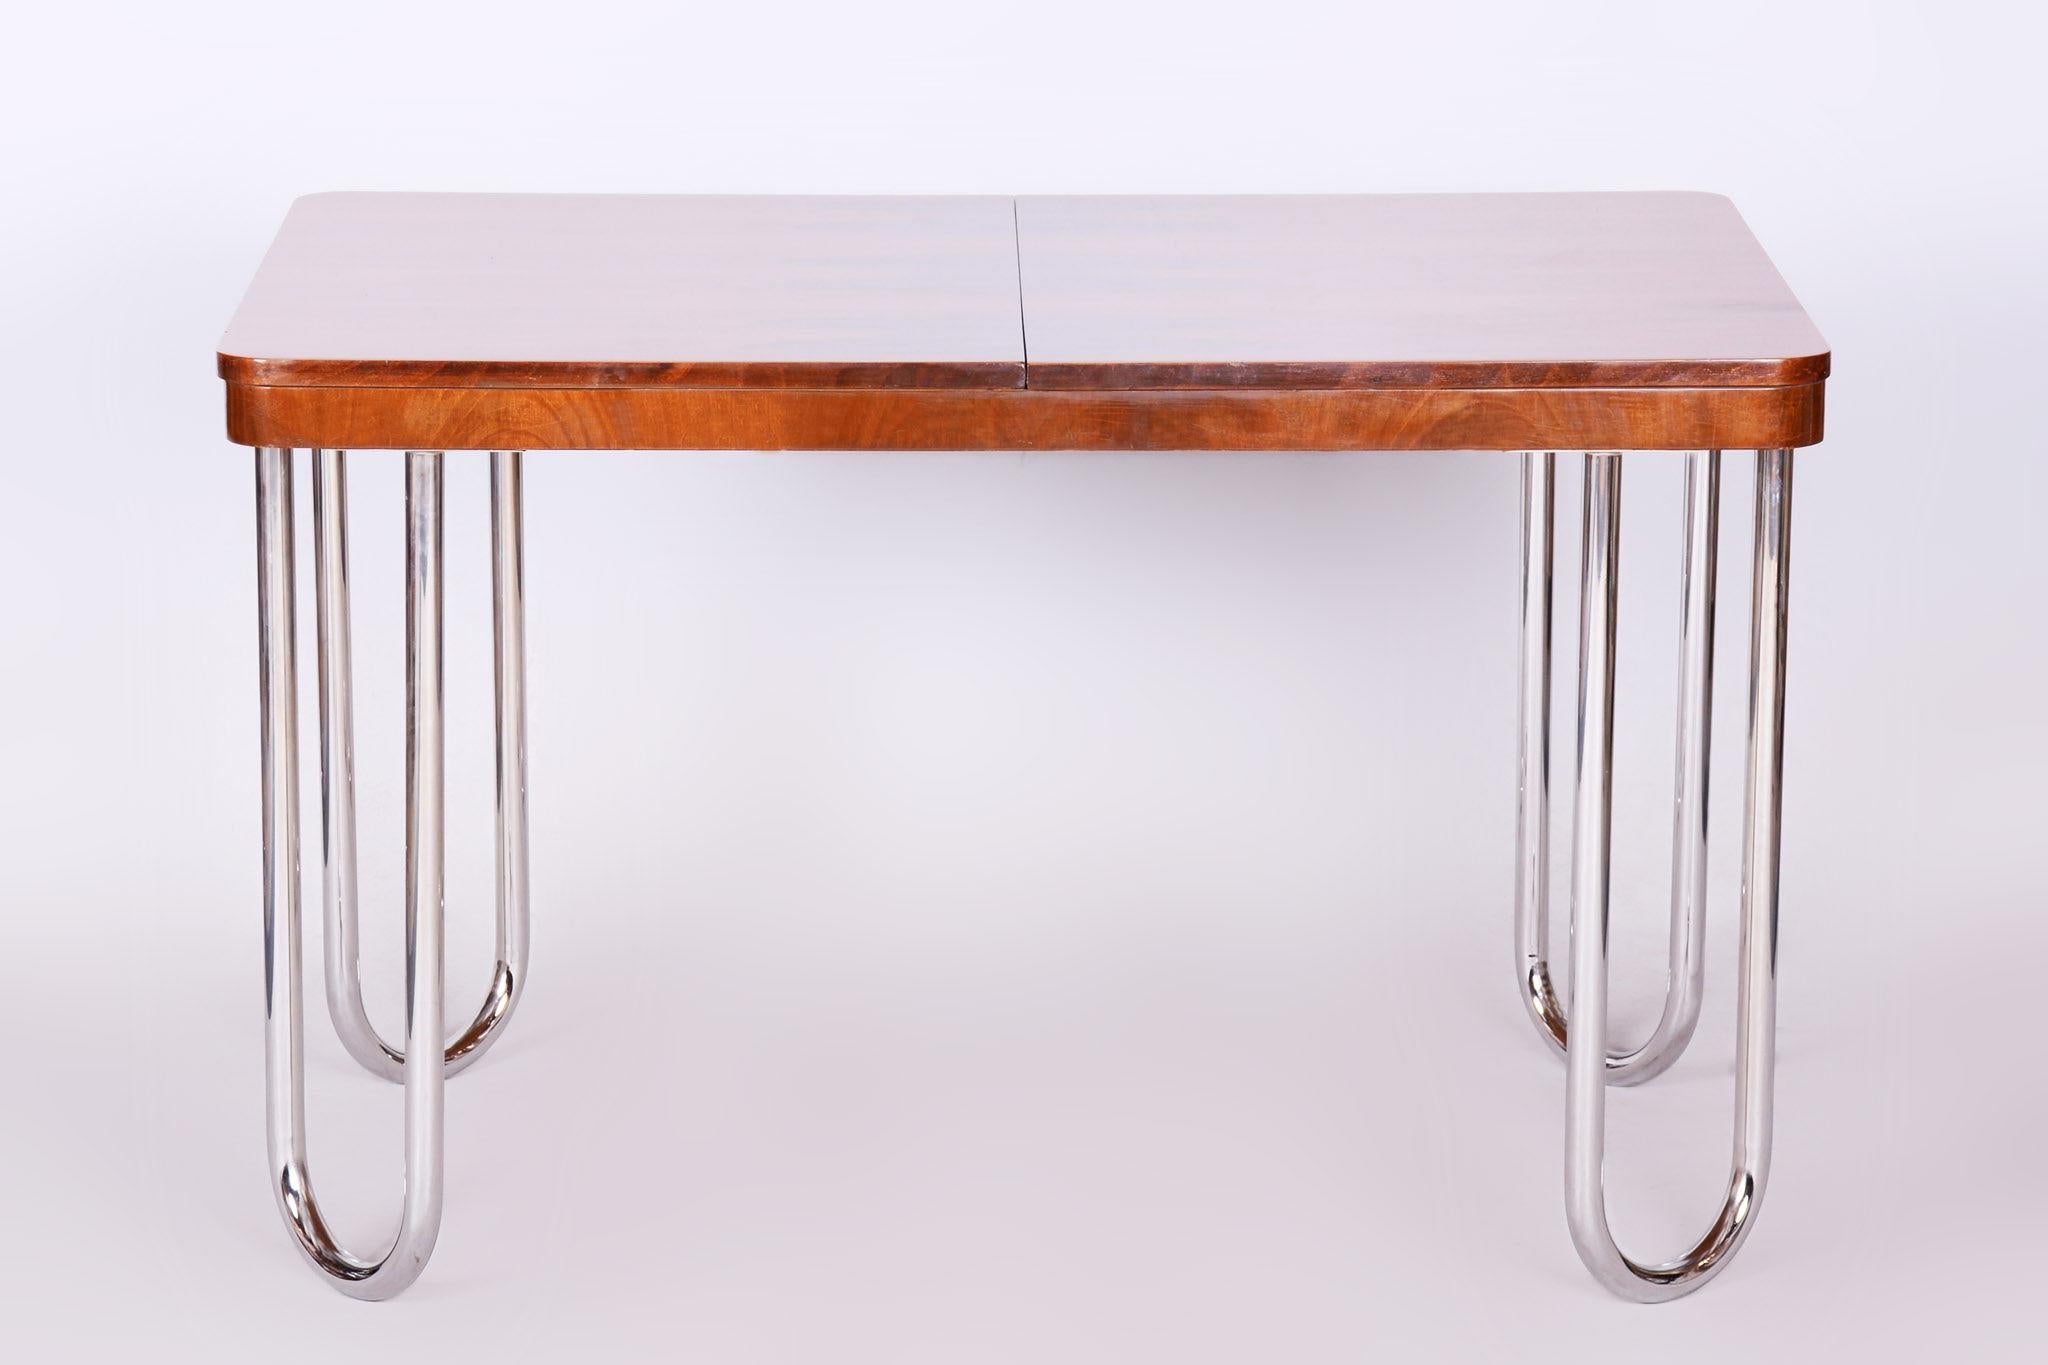 Table de salle à manger pliante tchèque de style Bauhaus, conçue par Jindrich Halabala.

Période : 1930-1939
Matériau : noyer, acier chromé
Restauré.

Largeur réglable en 2 dimensions :
120 et 170 cm (47,2 in et 47,2 in)

